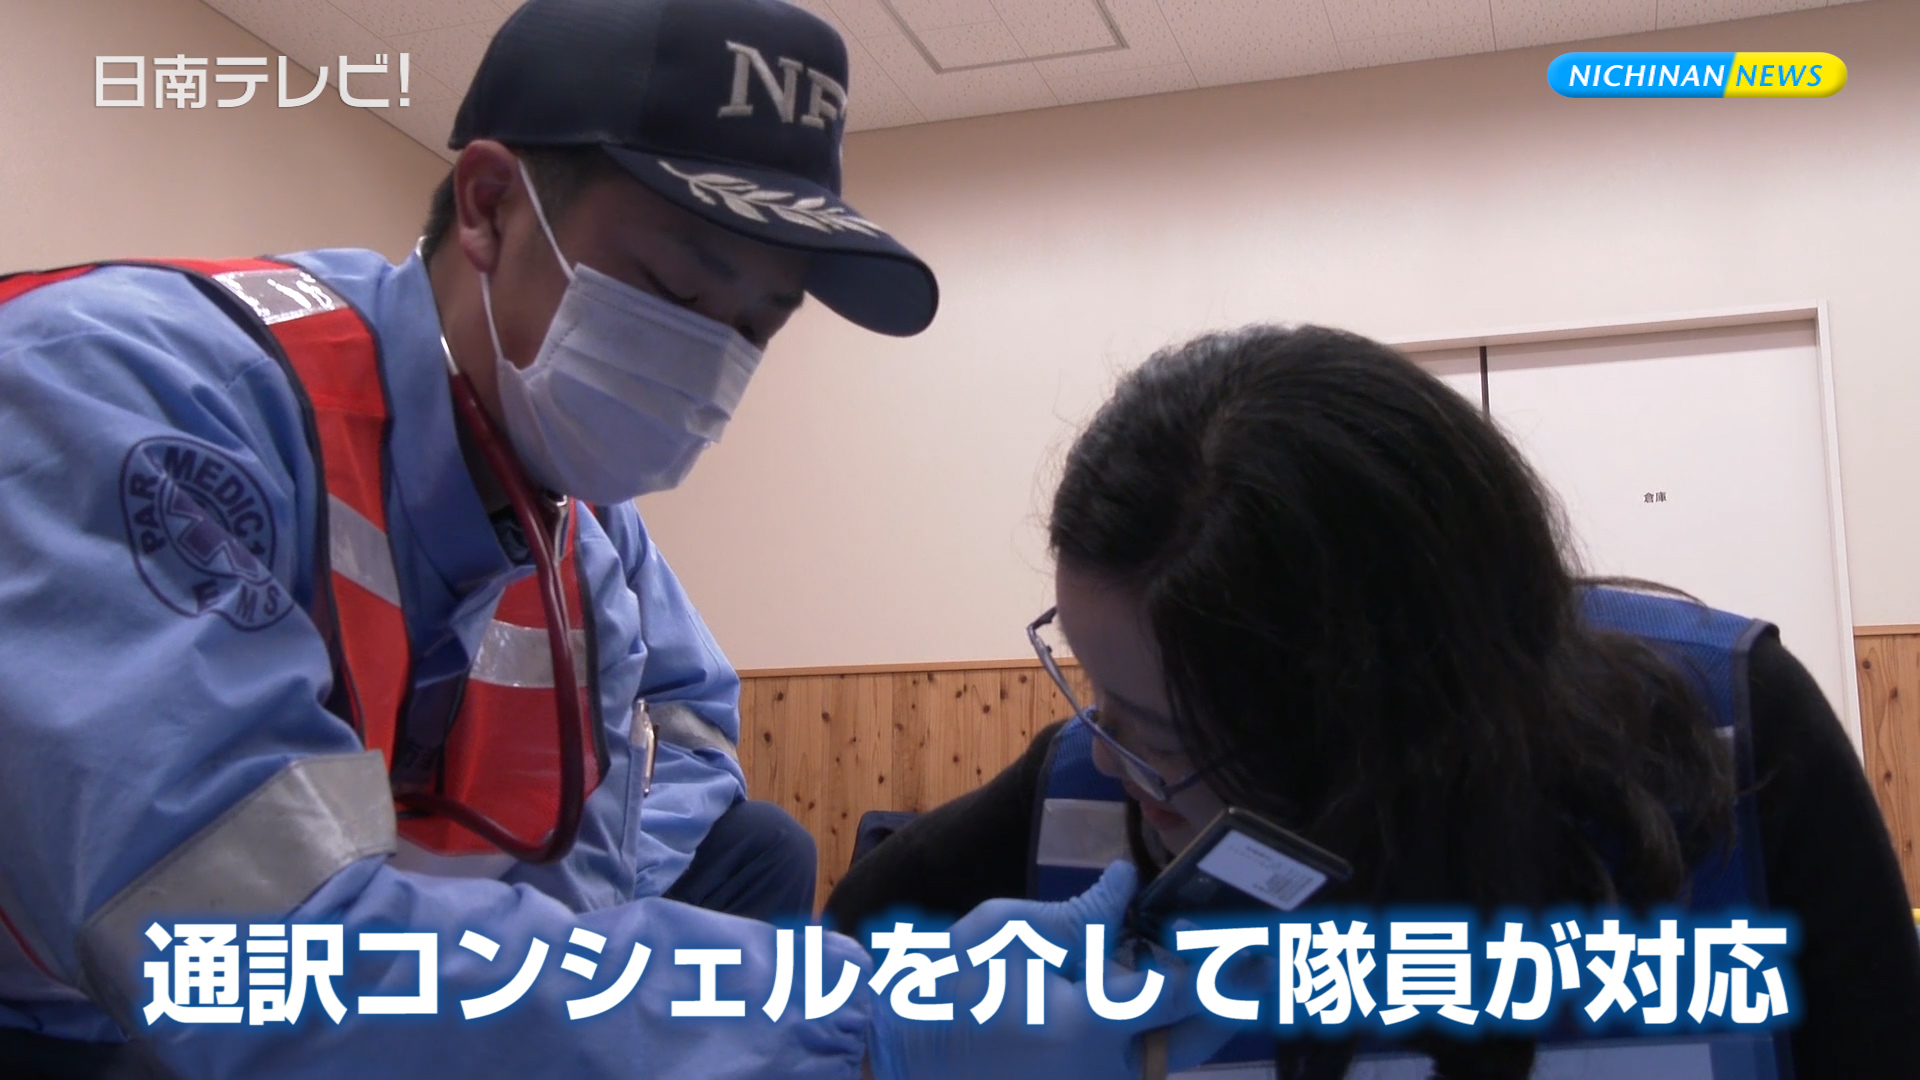 消防隊員が外国人対応救急シミュレーション 日南テレビ 公式